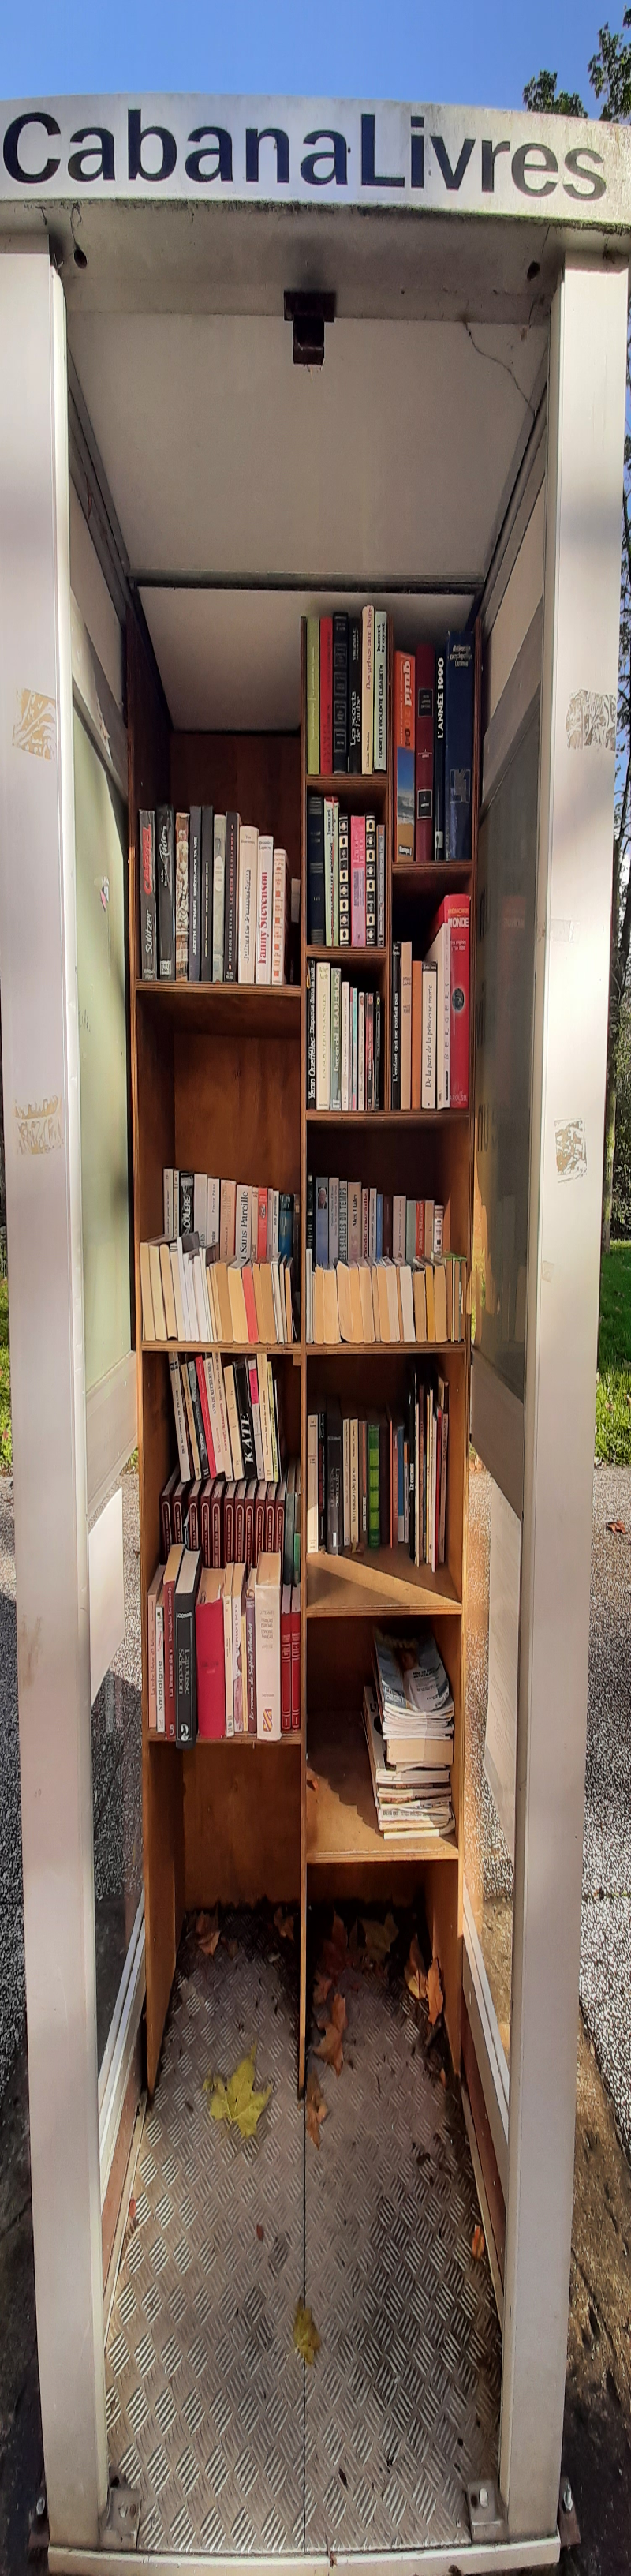 Délivrez - Boite à livres (Aix-les-Bains, France)